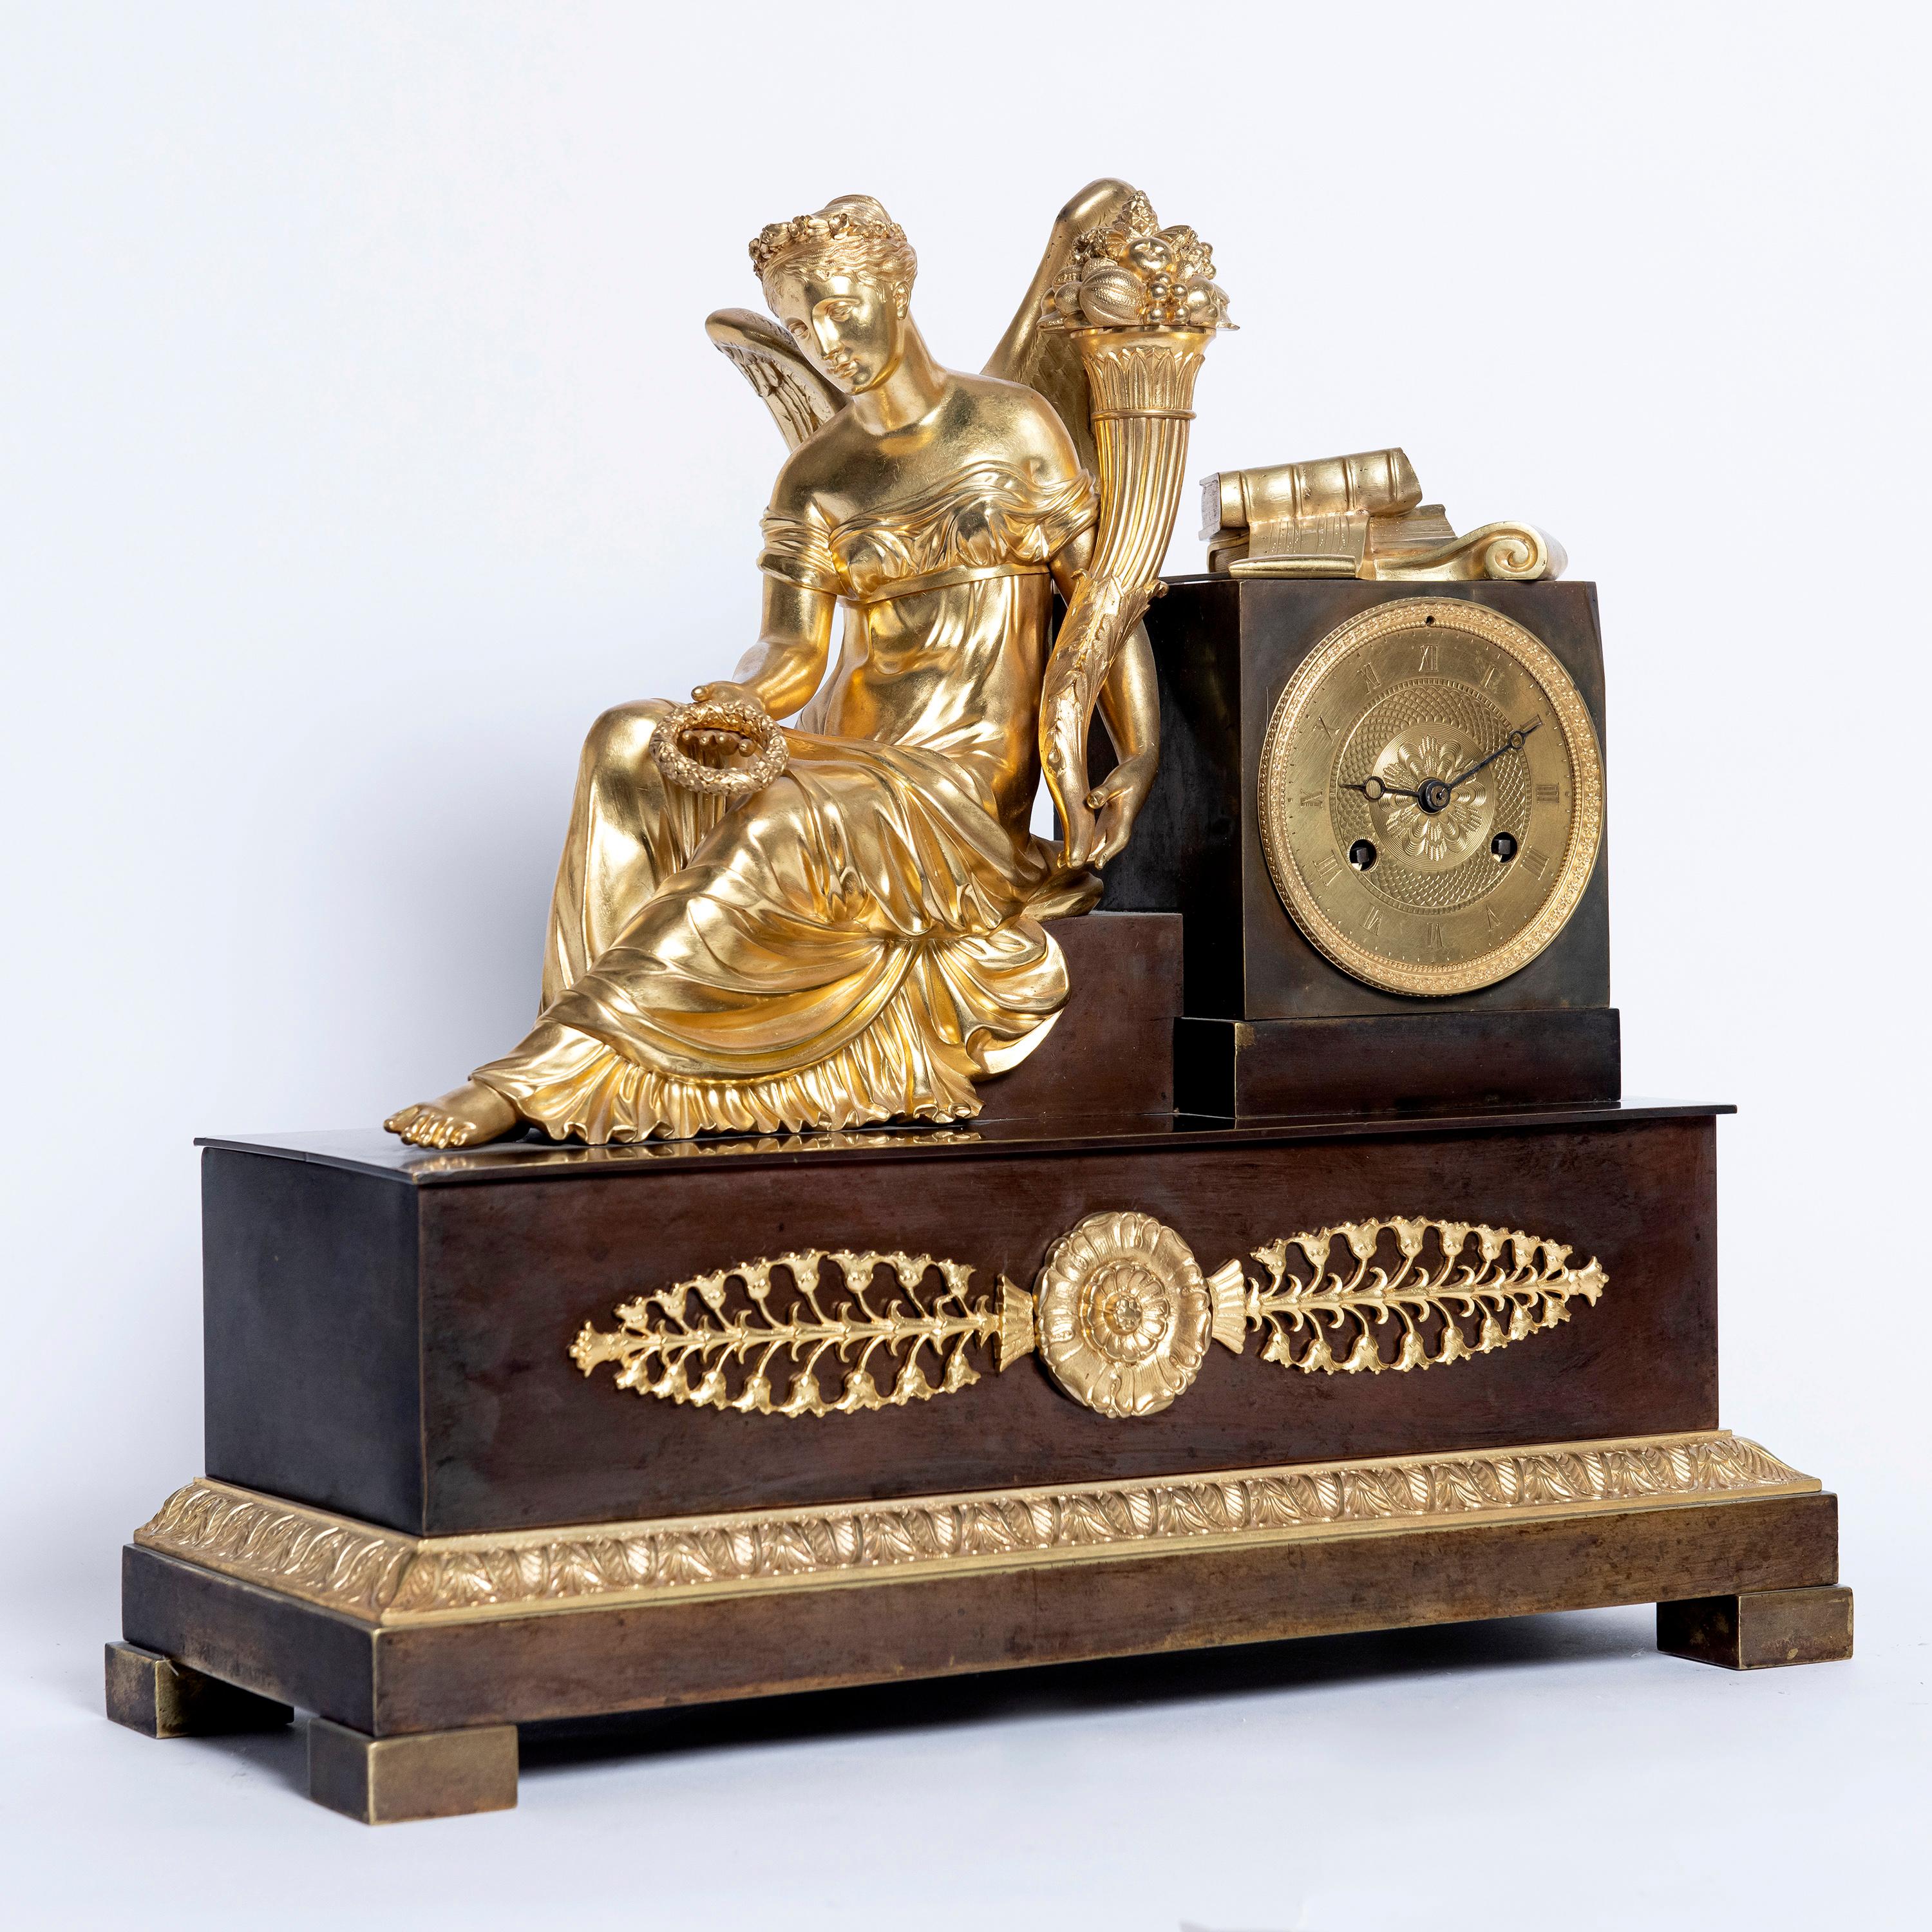 Vergoldete und patinierte Bronze Kaminsimsuhr, Maschine signiert L. Moinet A Paris. Frankreich, Anfang des 19. Jahrhunderts.